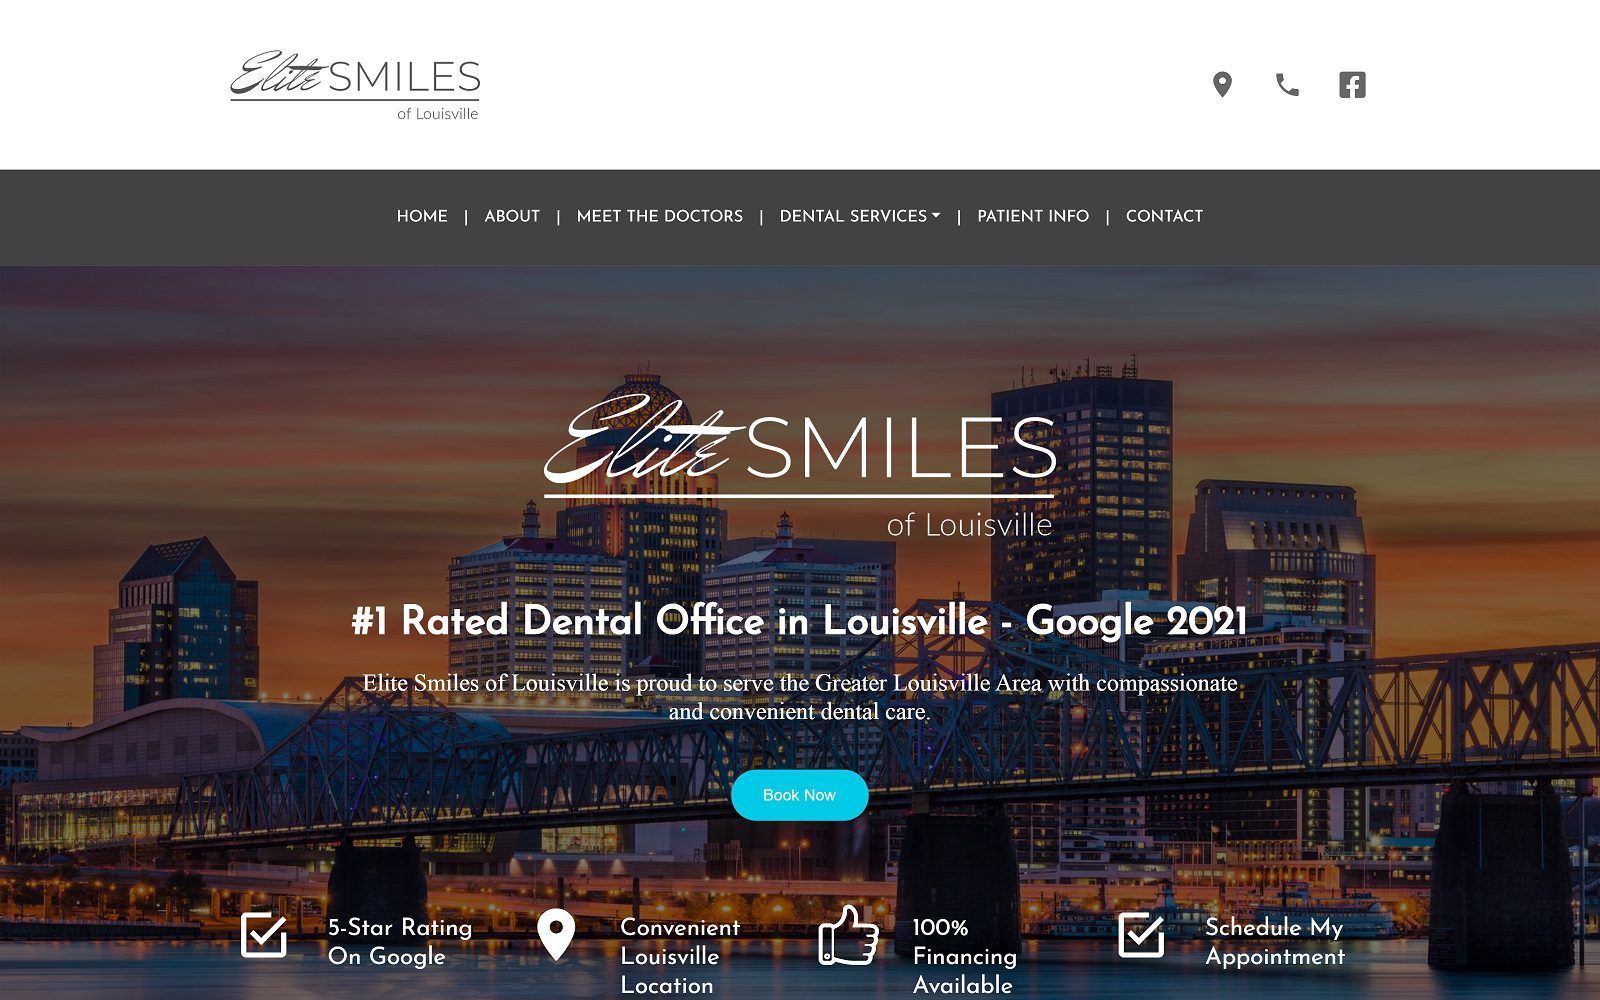 The screenshot of elite smiles of louisville website